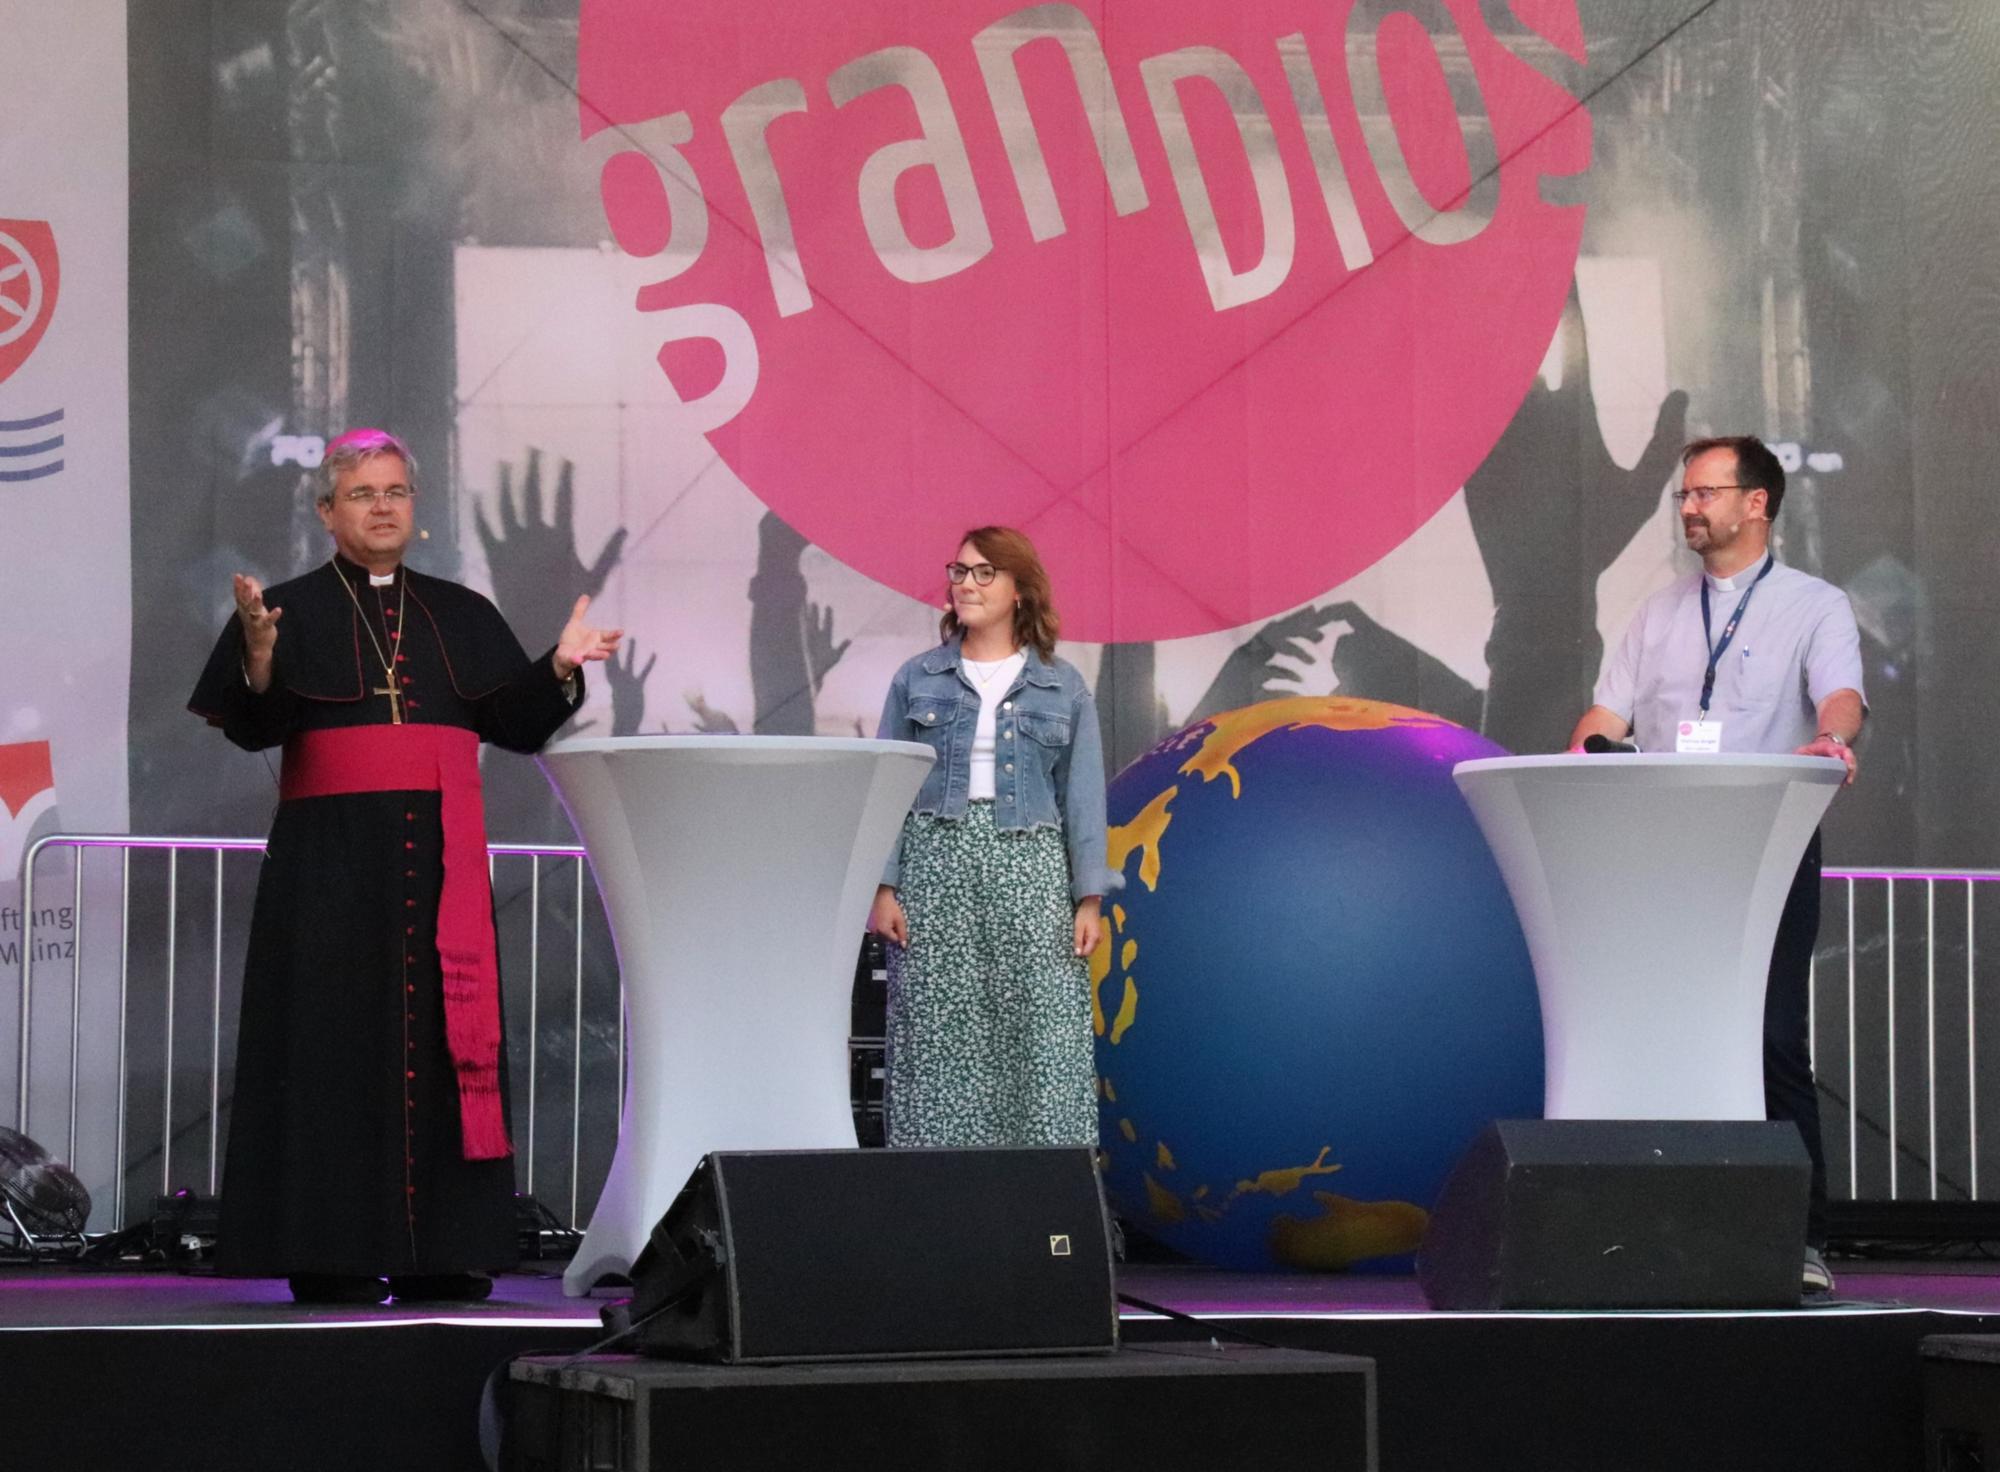 Der Mainzer Weihbischof und Generalvikar, Dr. Udo Markus Bentz, begrüßte die Teilnehmenden des Festival-Tages. Ann-Kathrin Marschall moderierte das 